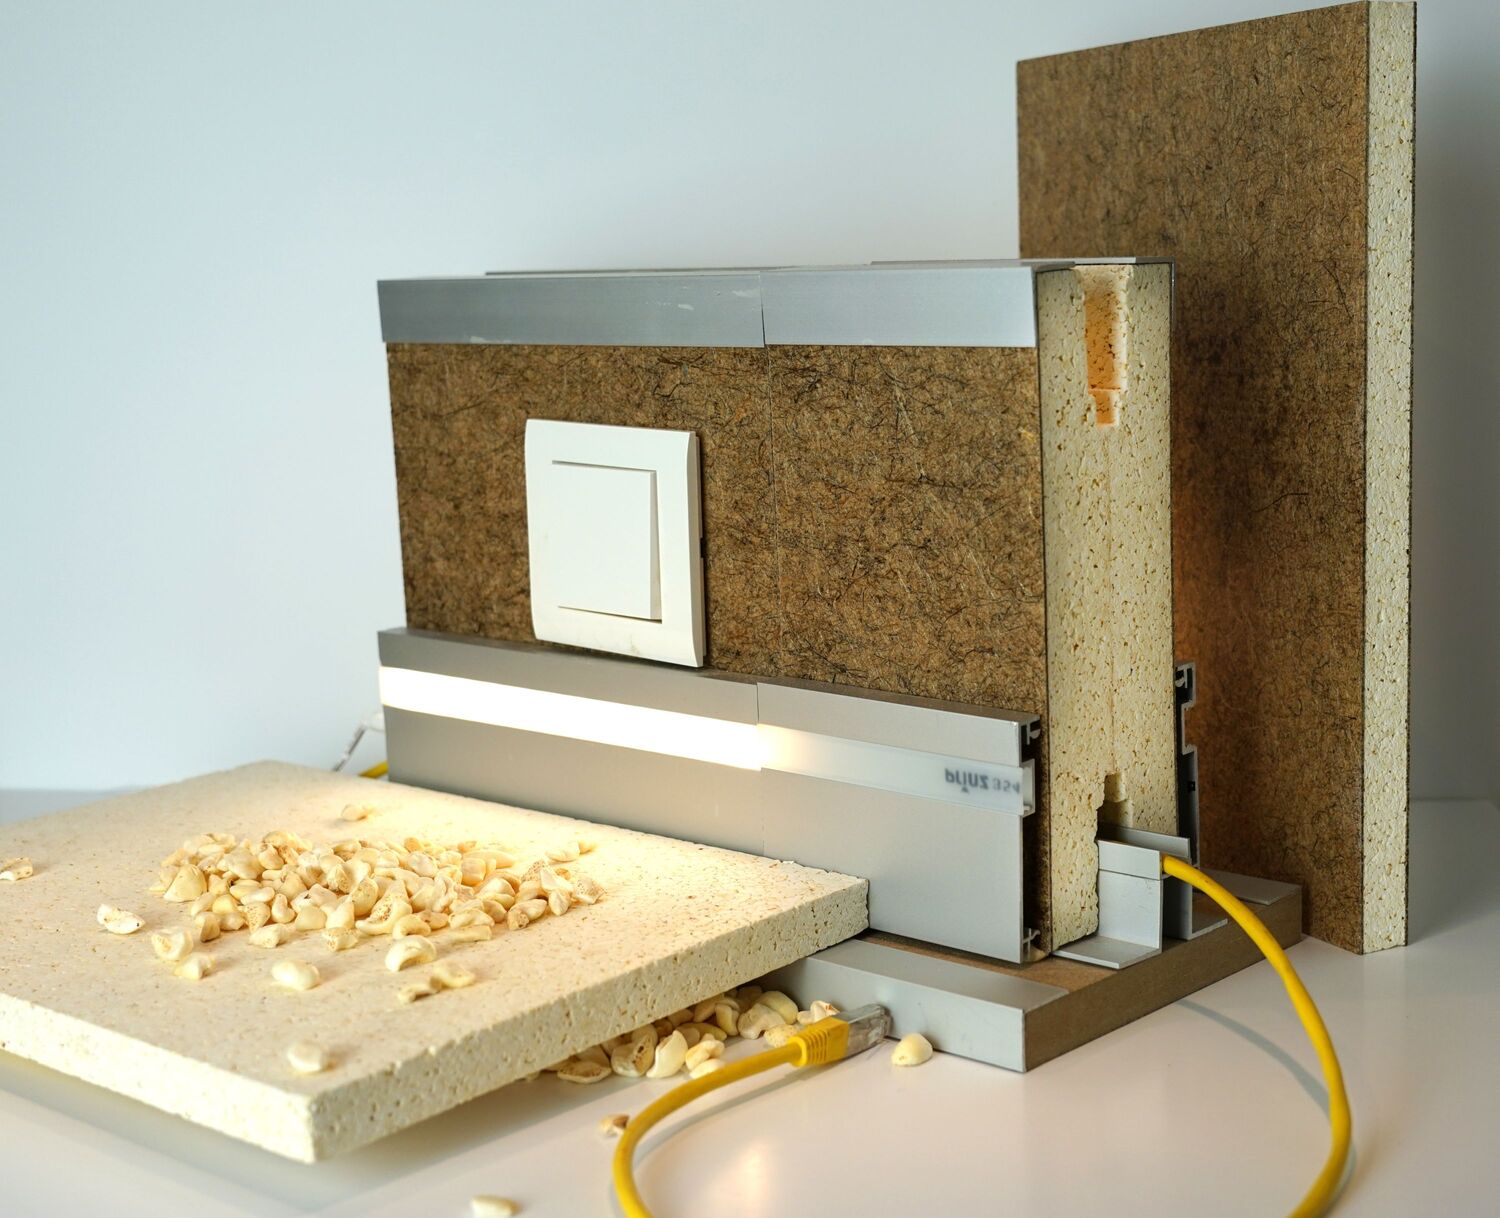 Bezahlbarer Wohnraum aus umweltschonendem und CO2-neutralem Baumaterial: Wissenschaftlerinnen und Wissenschaftler der Universität Göttingen haben ein Verfahren entwickelt, mit dem sich Paneele aus Hanf, Flachs und Popcorngranulat herstellen lassen.